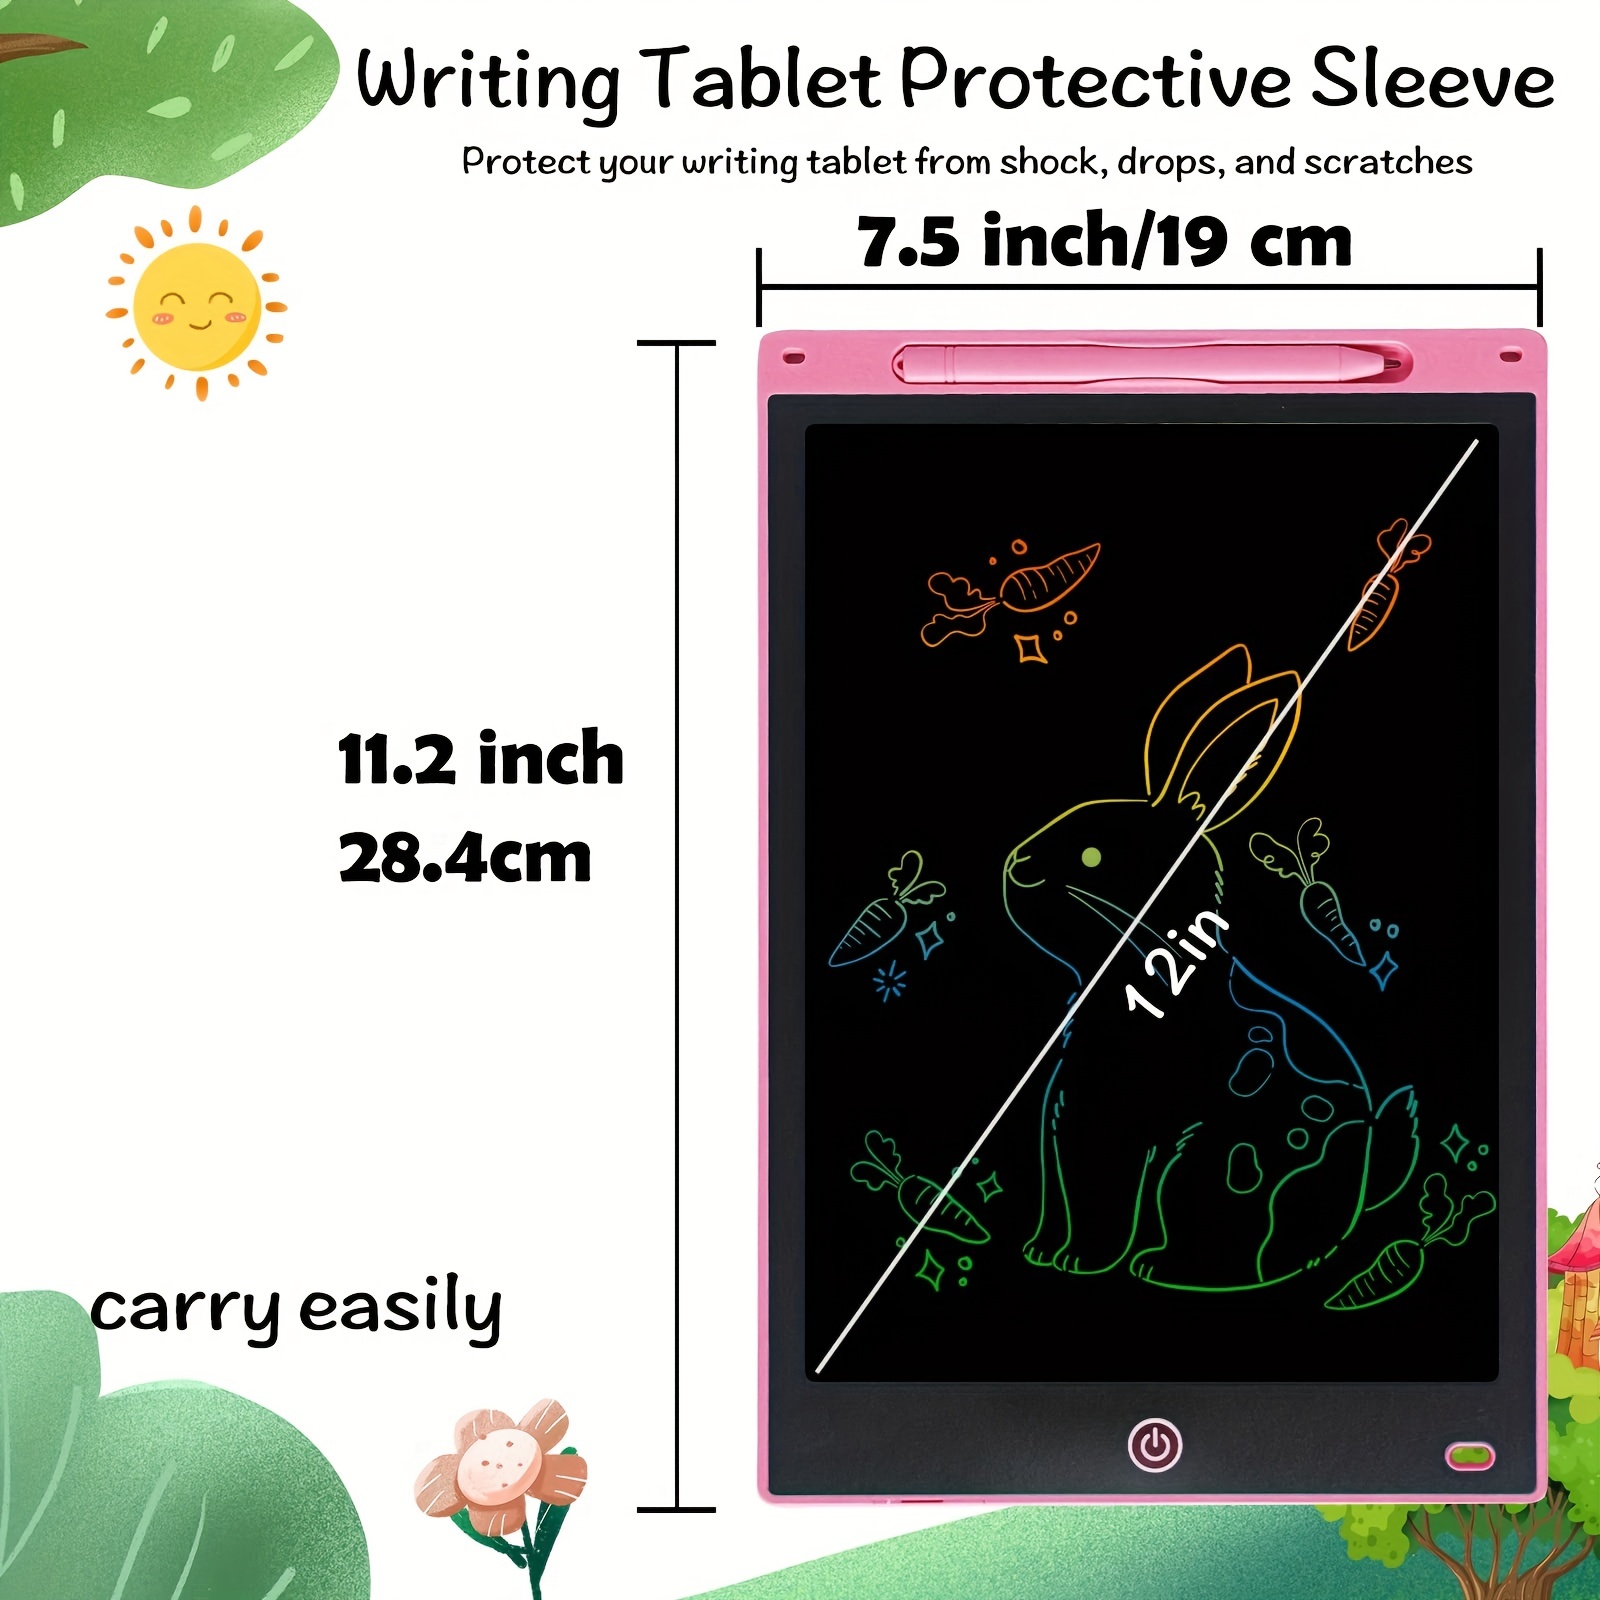 12-palcová elektronická doska na kreslenie, písací tablet pre deti, doska na čmáranice s farebnou obrazovkou, vymazateľný a opakovane použiteľný digitálny tablet na kreslenie, vzdelávacie hračky pre dievčatá a chlapcov